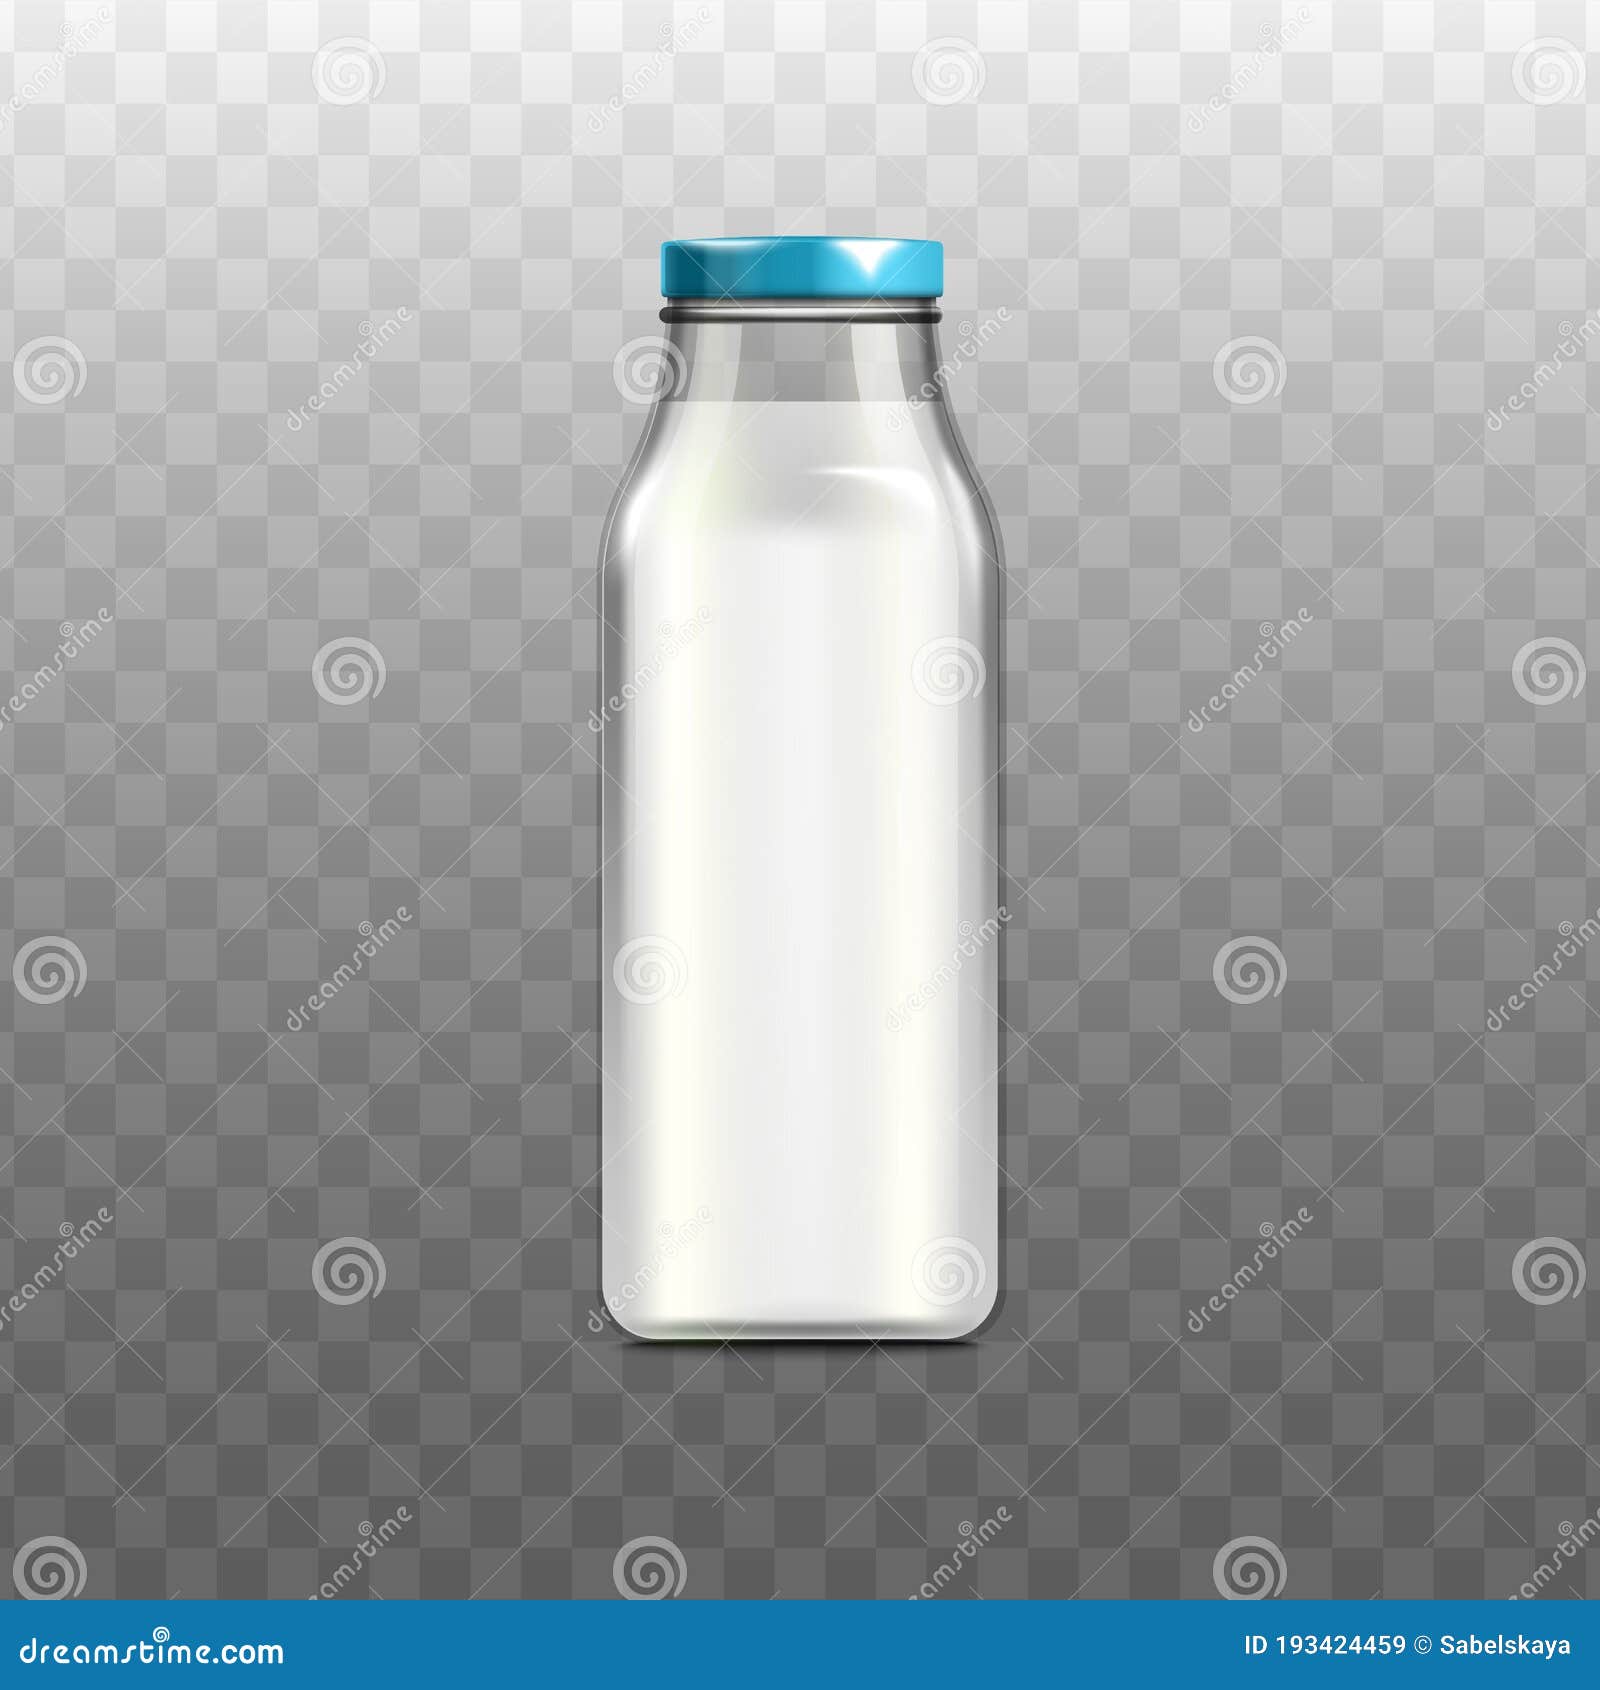 https://thumbs.dreamstime.com/z/botella-de-leche-completa-mockup-contenedor-bebidas-vidrio-realista-aislado-sobre-fondo-transparente-recipiente-peque%C3%B1o-o-193424459.jpg